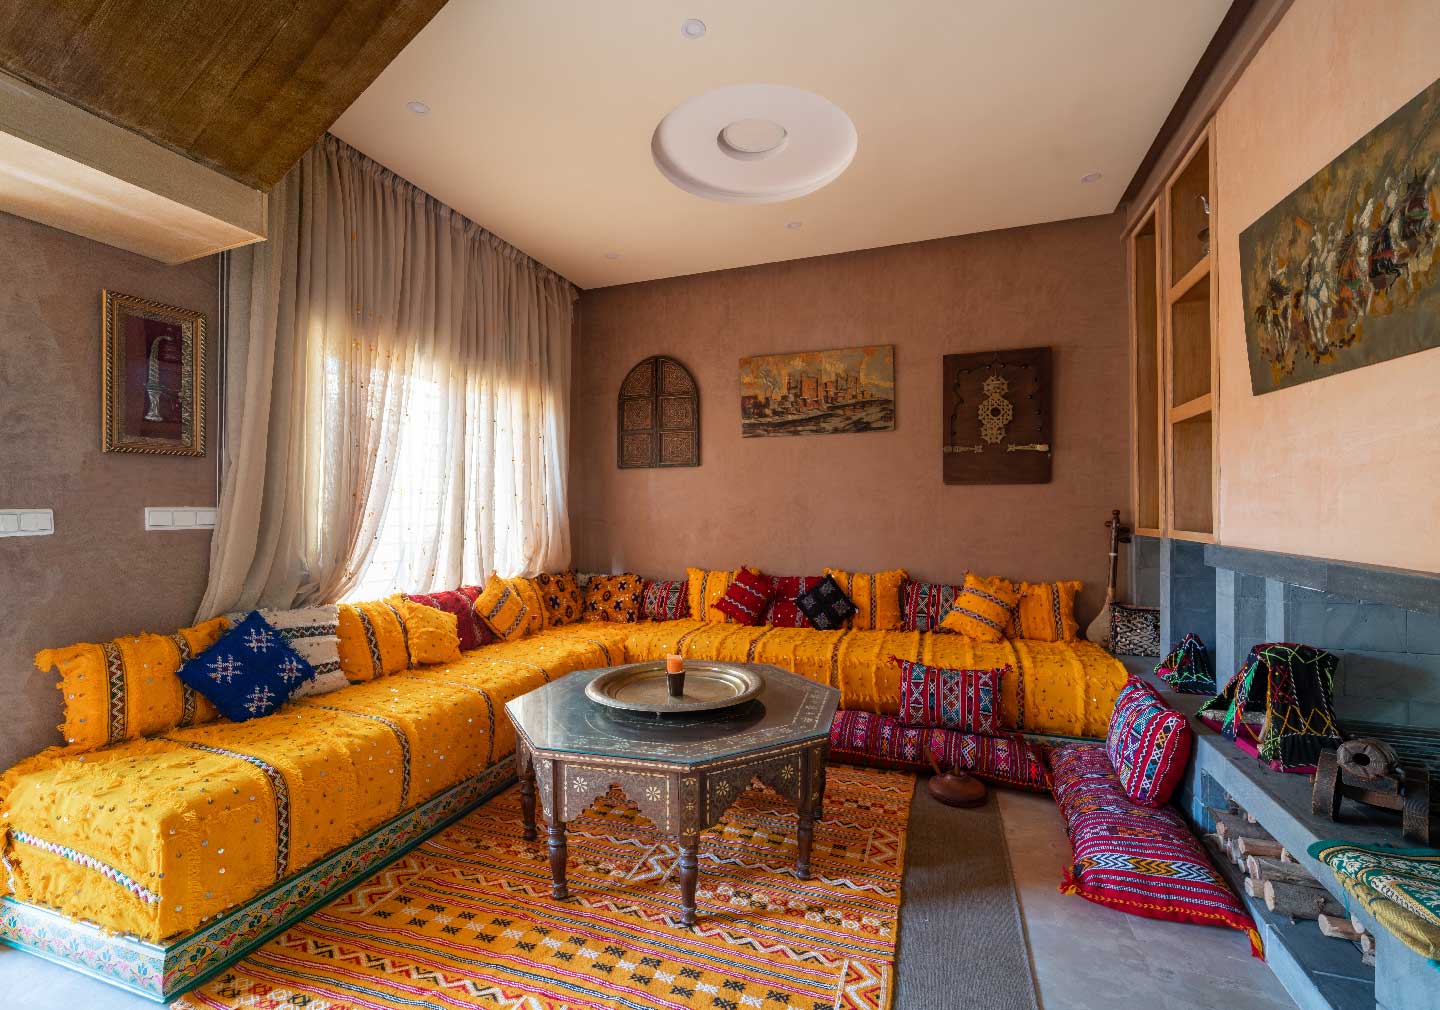 Moroccan interior designs